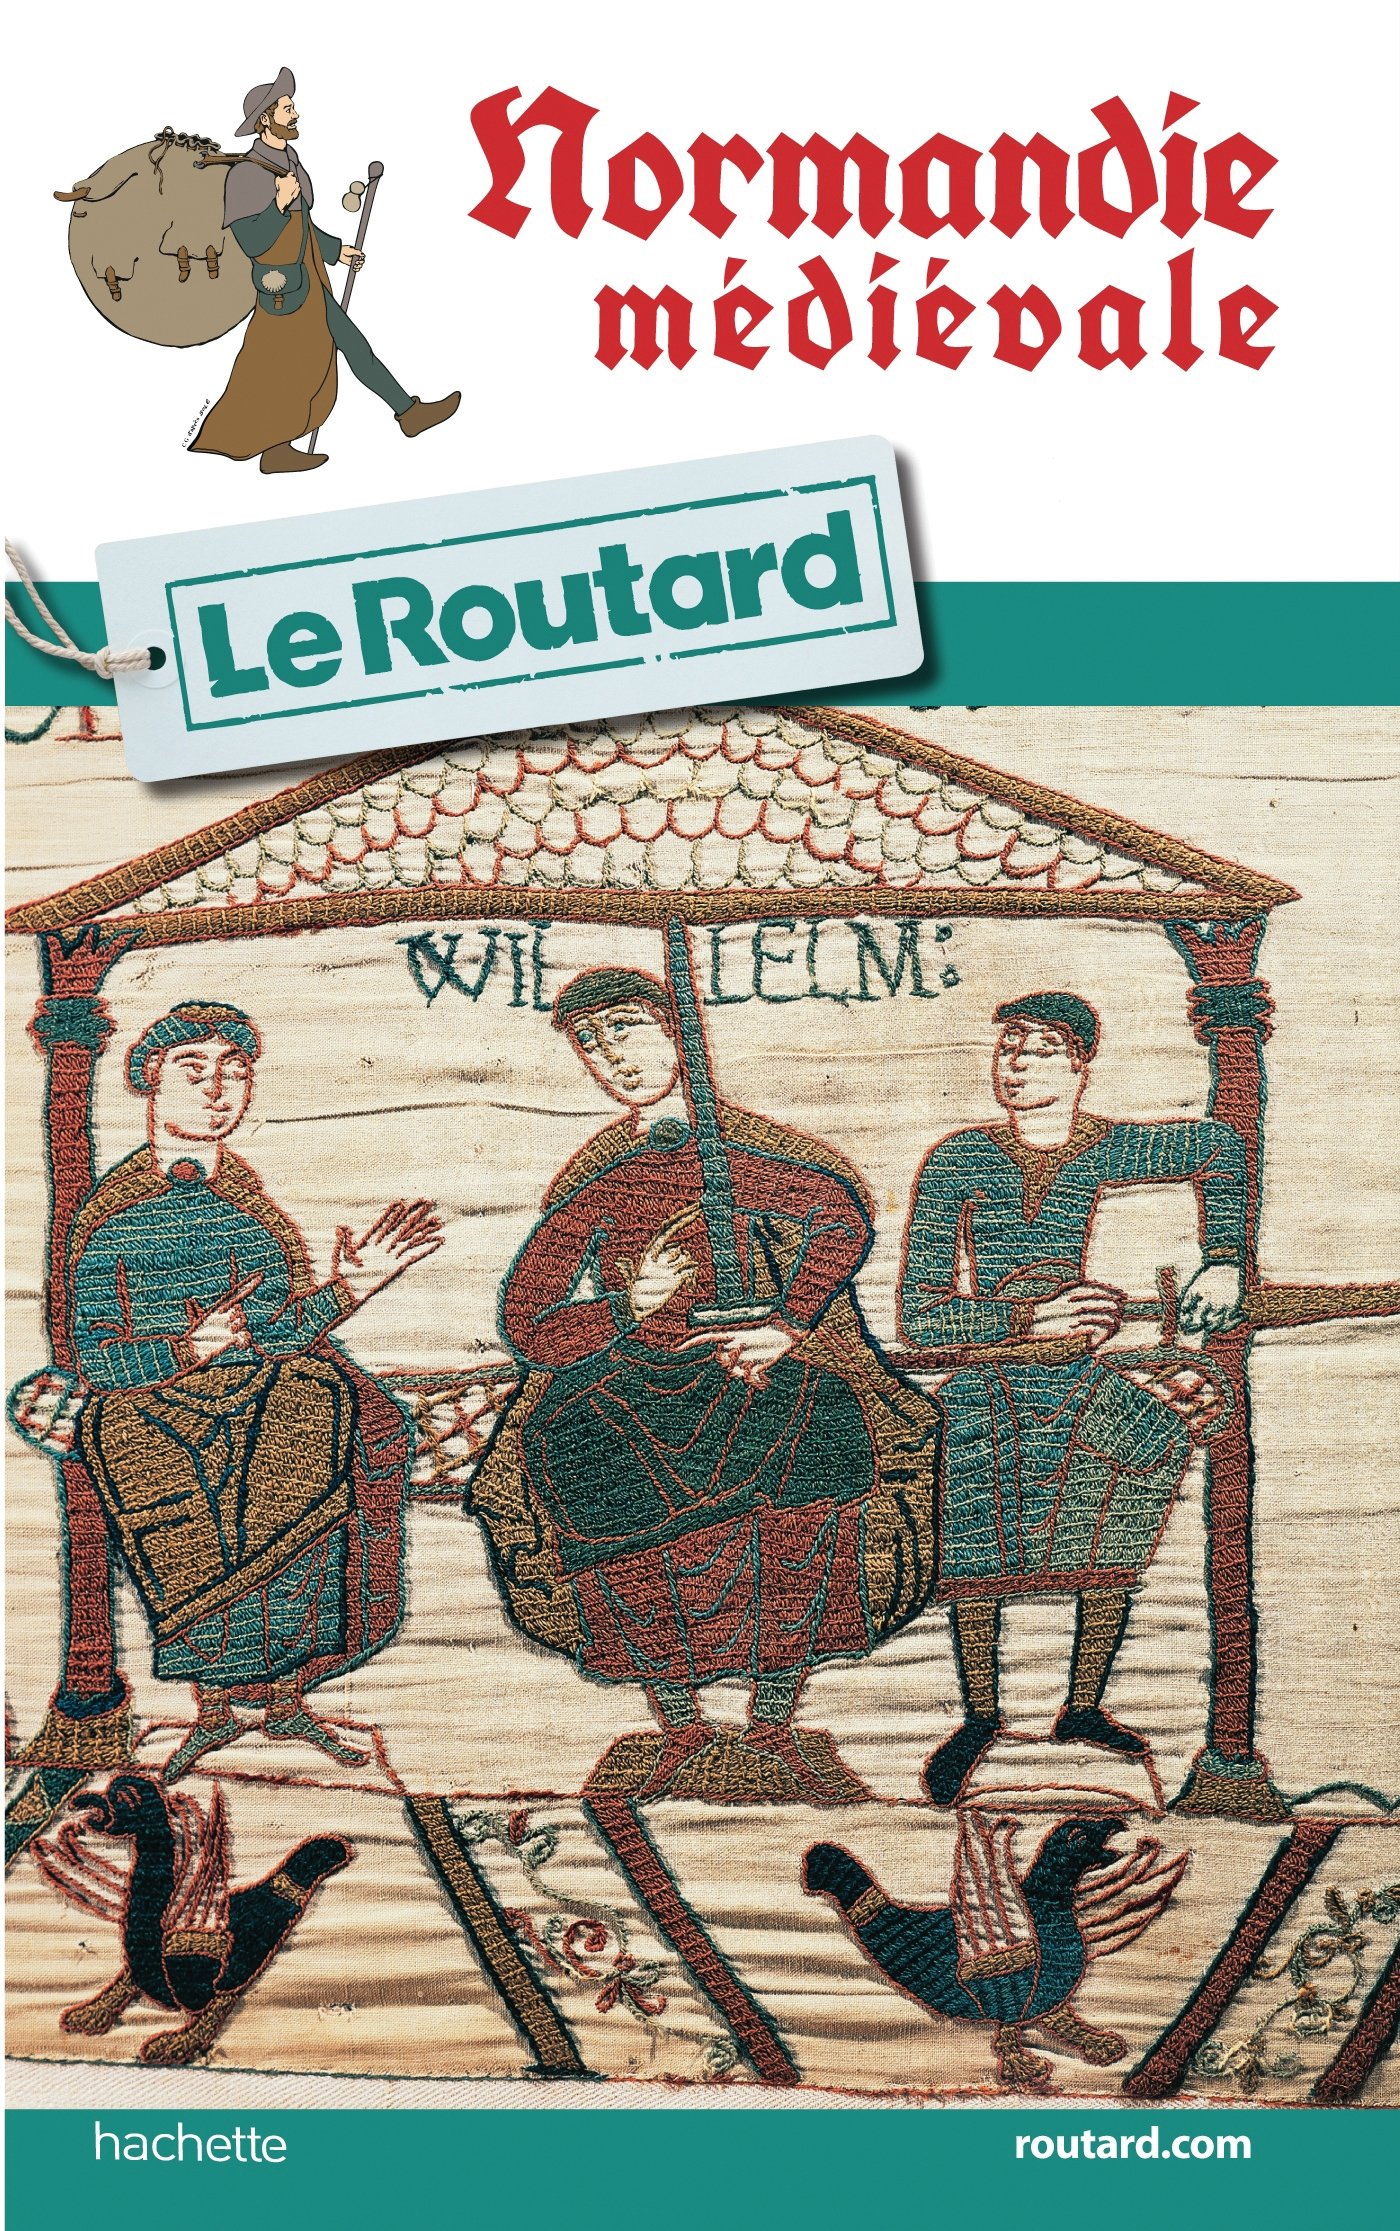 Normandie médiévale. Le Routard, 2018, 158 p.